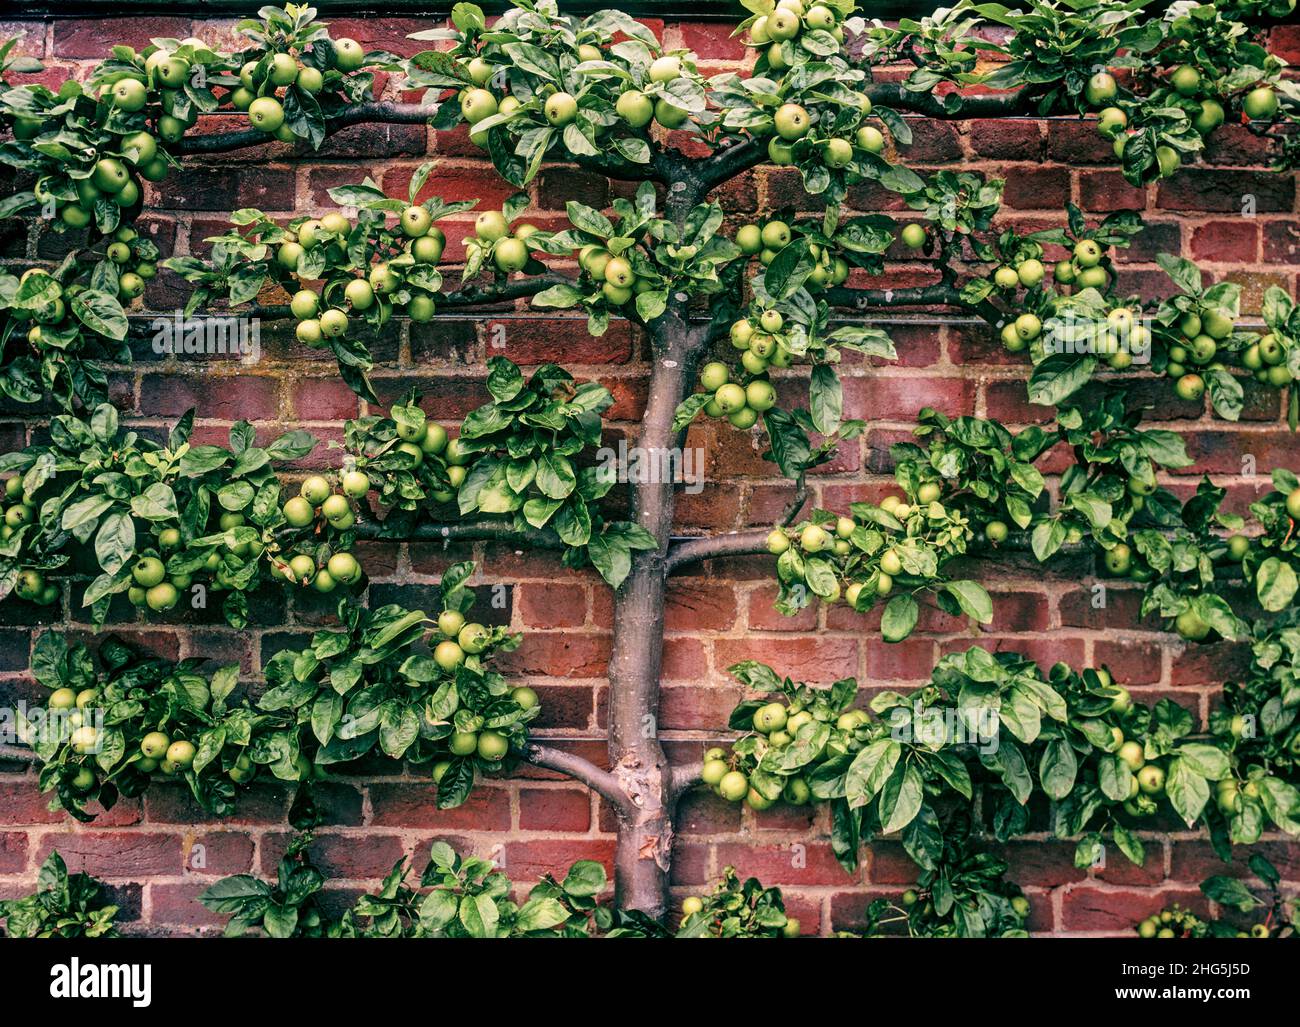 Árbol de manzana en un jardín de cocina amurallado inglés formal, Inglaterra, Reino Unido (con tratamiento retro vintage) Foto de stock